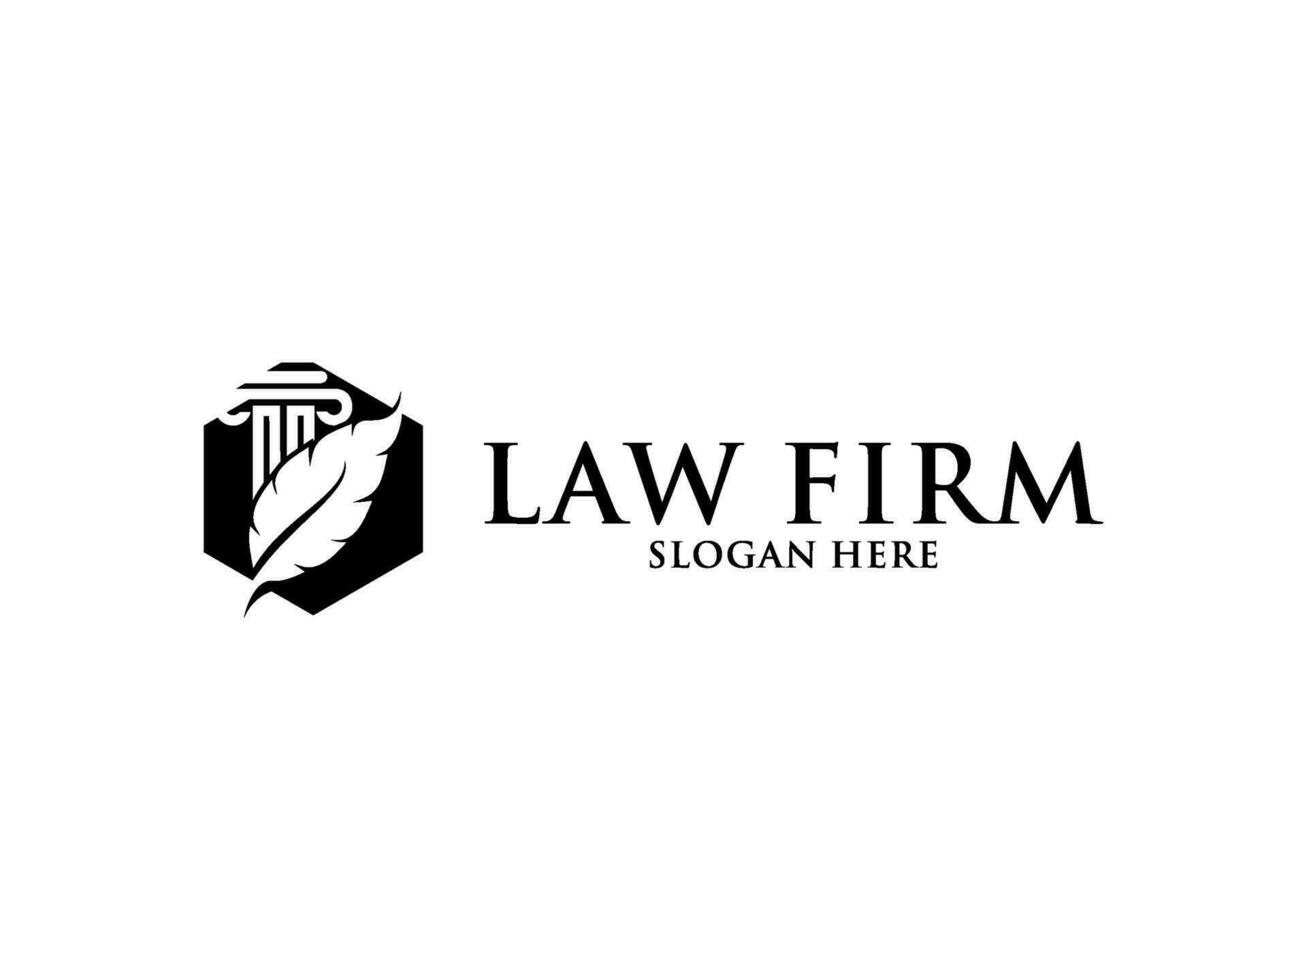 wet firma logo, advocaat logo met creatief wet element vector